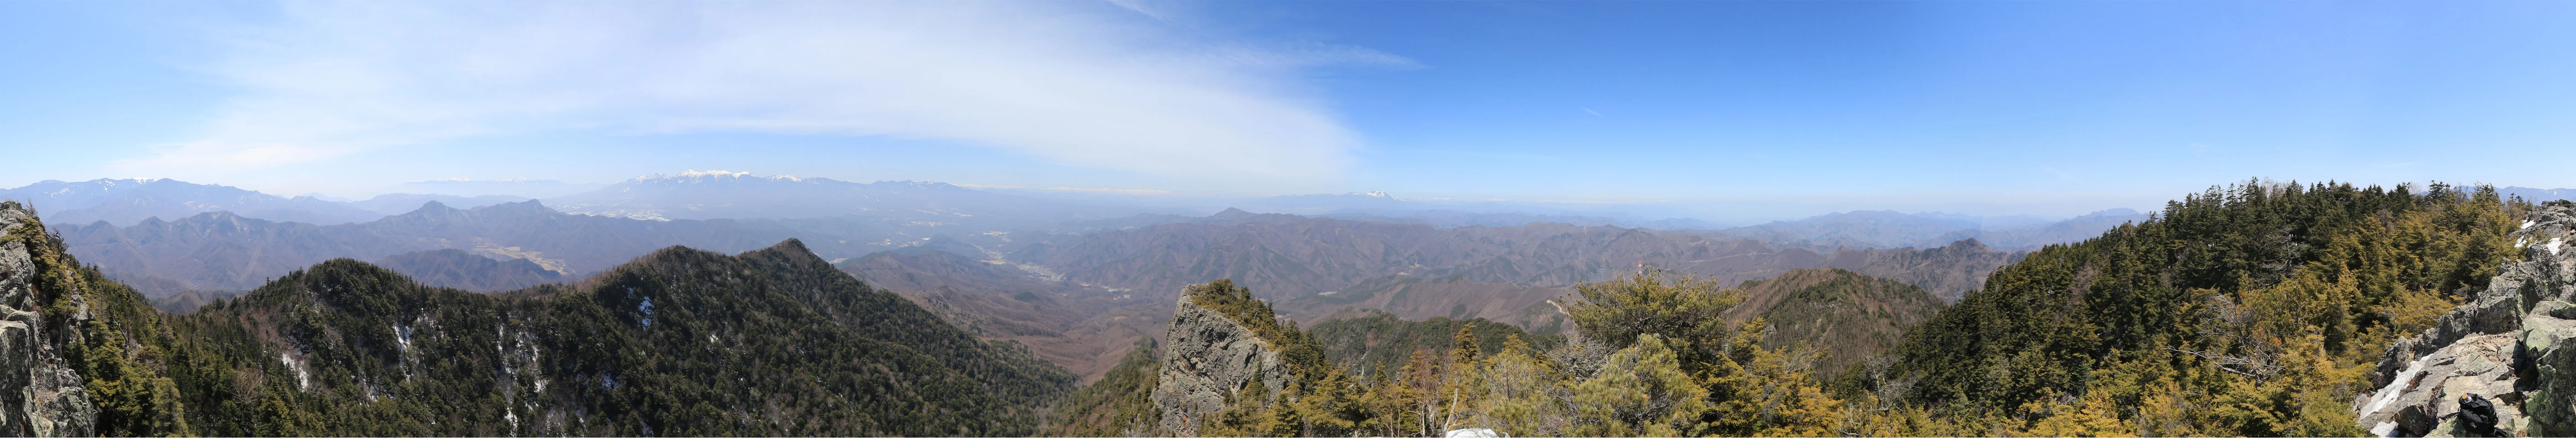 御座山からのパノラマ写真